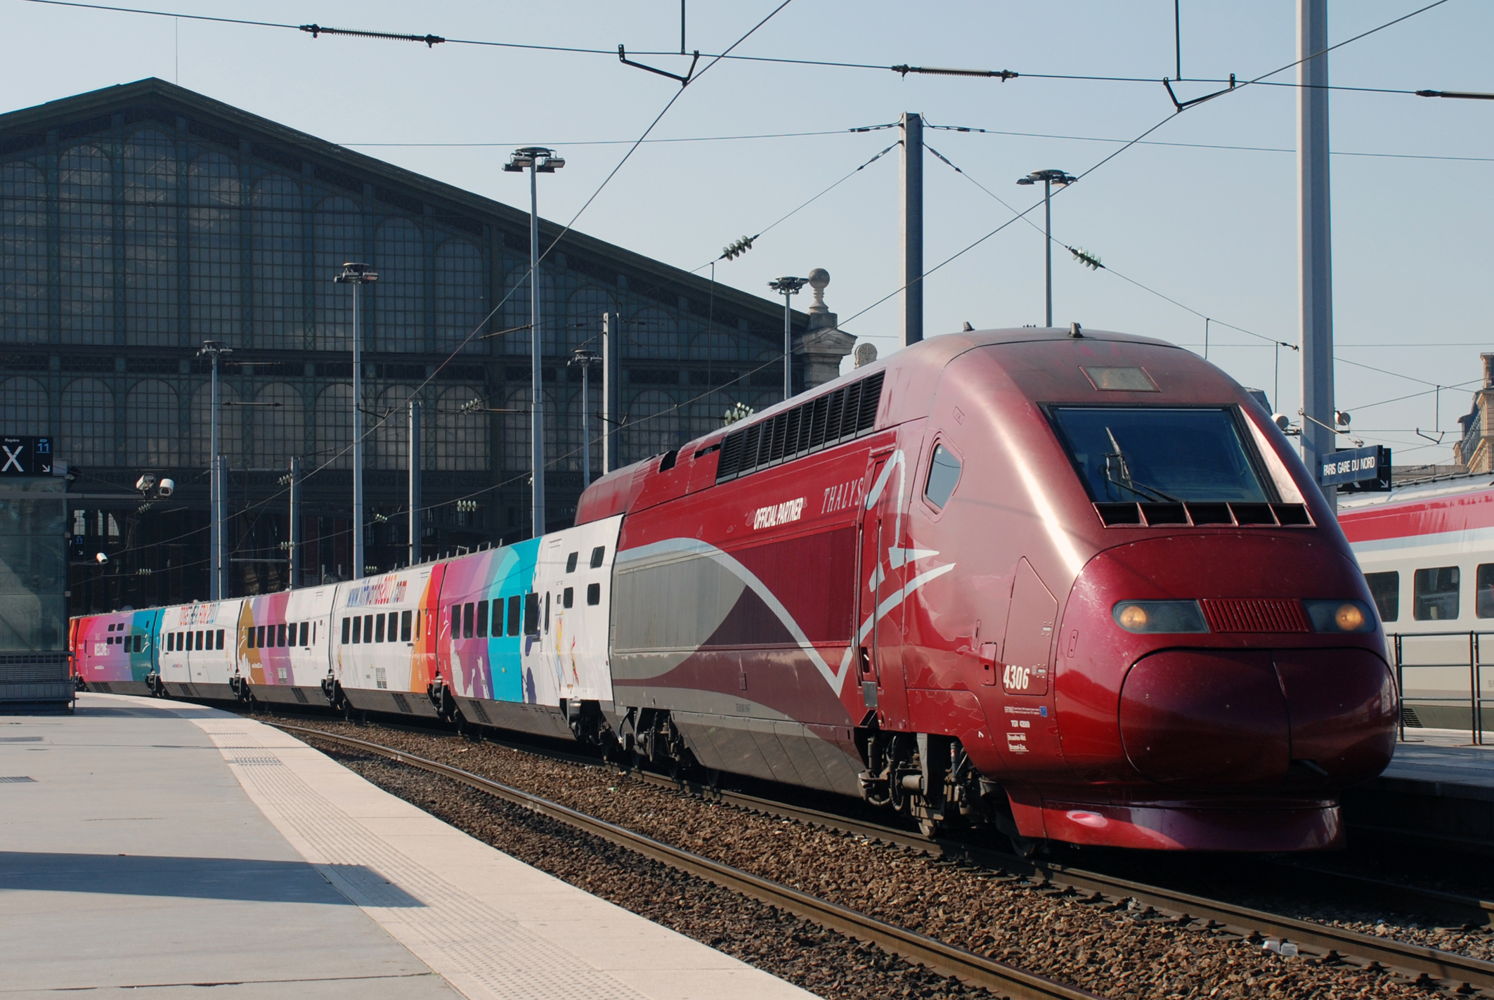 Le train Thalys, habillé pour le Championnat du Monde de Hockey sur Glace.
©CelineJuste